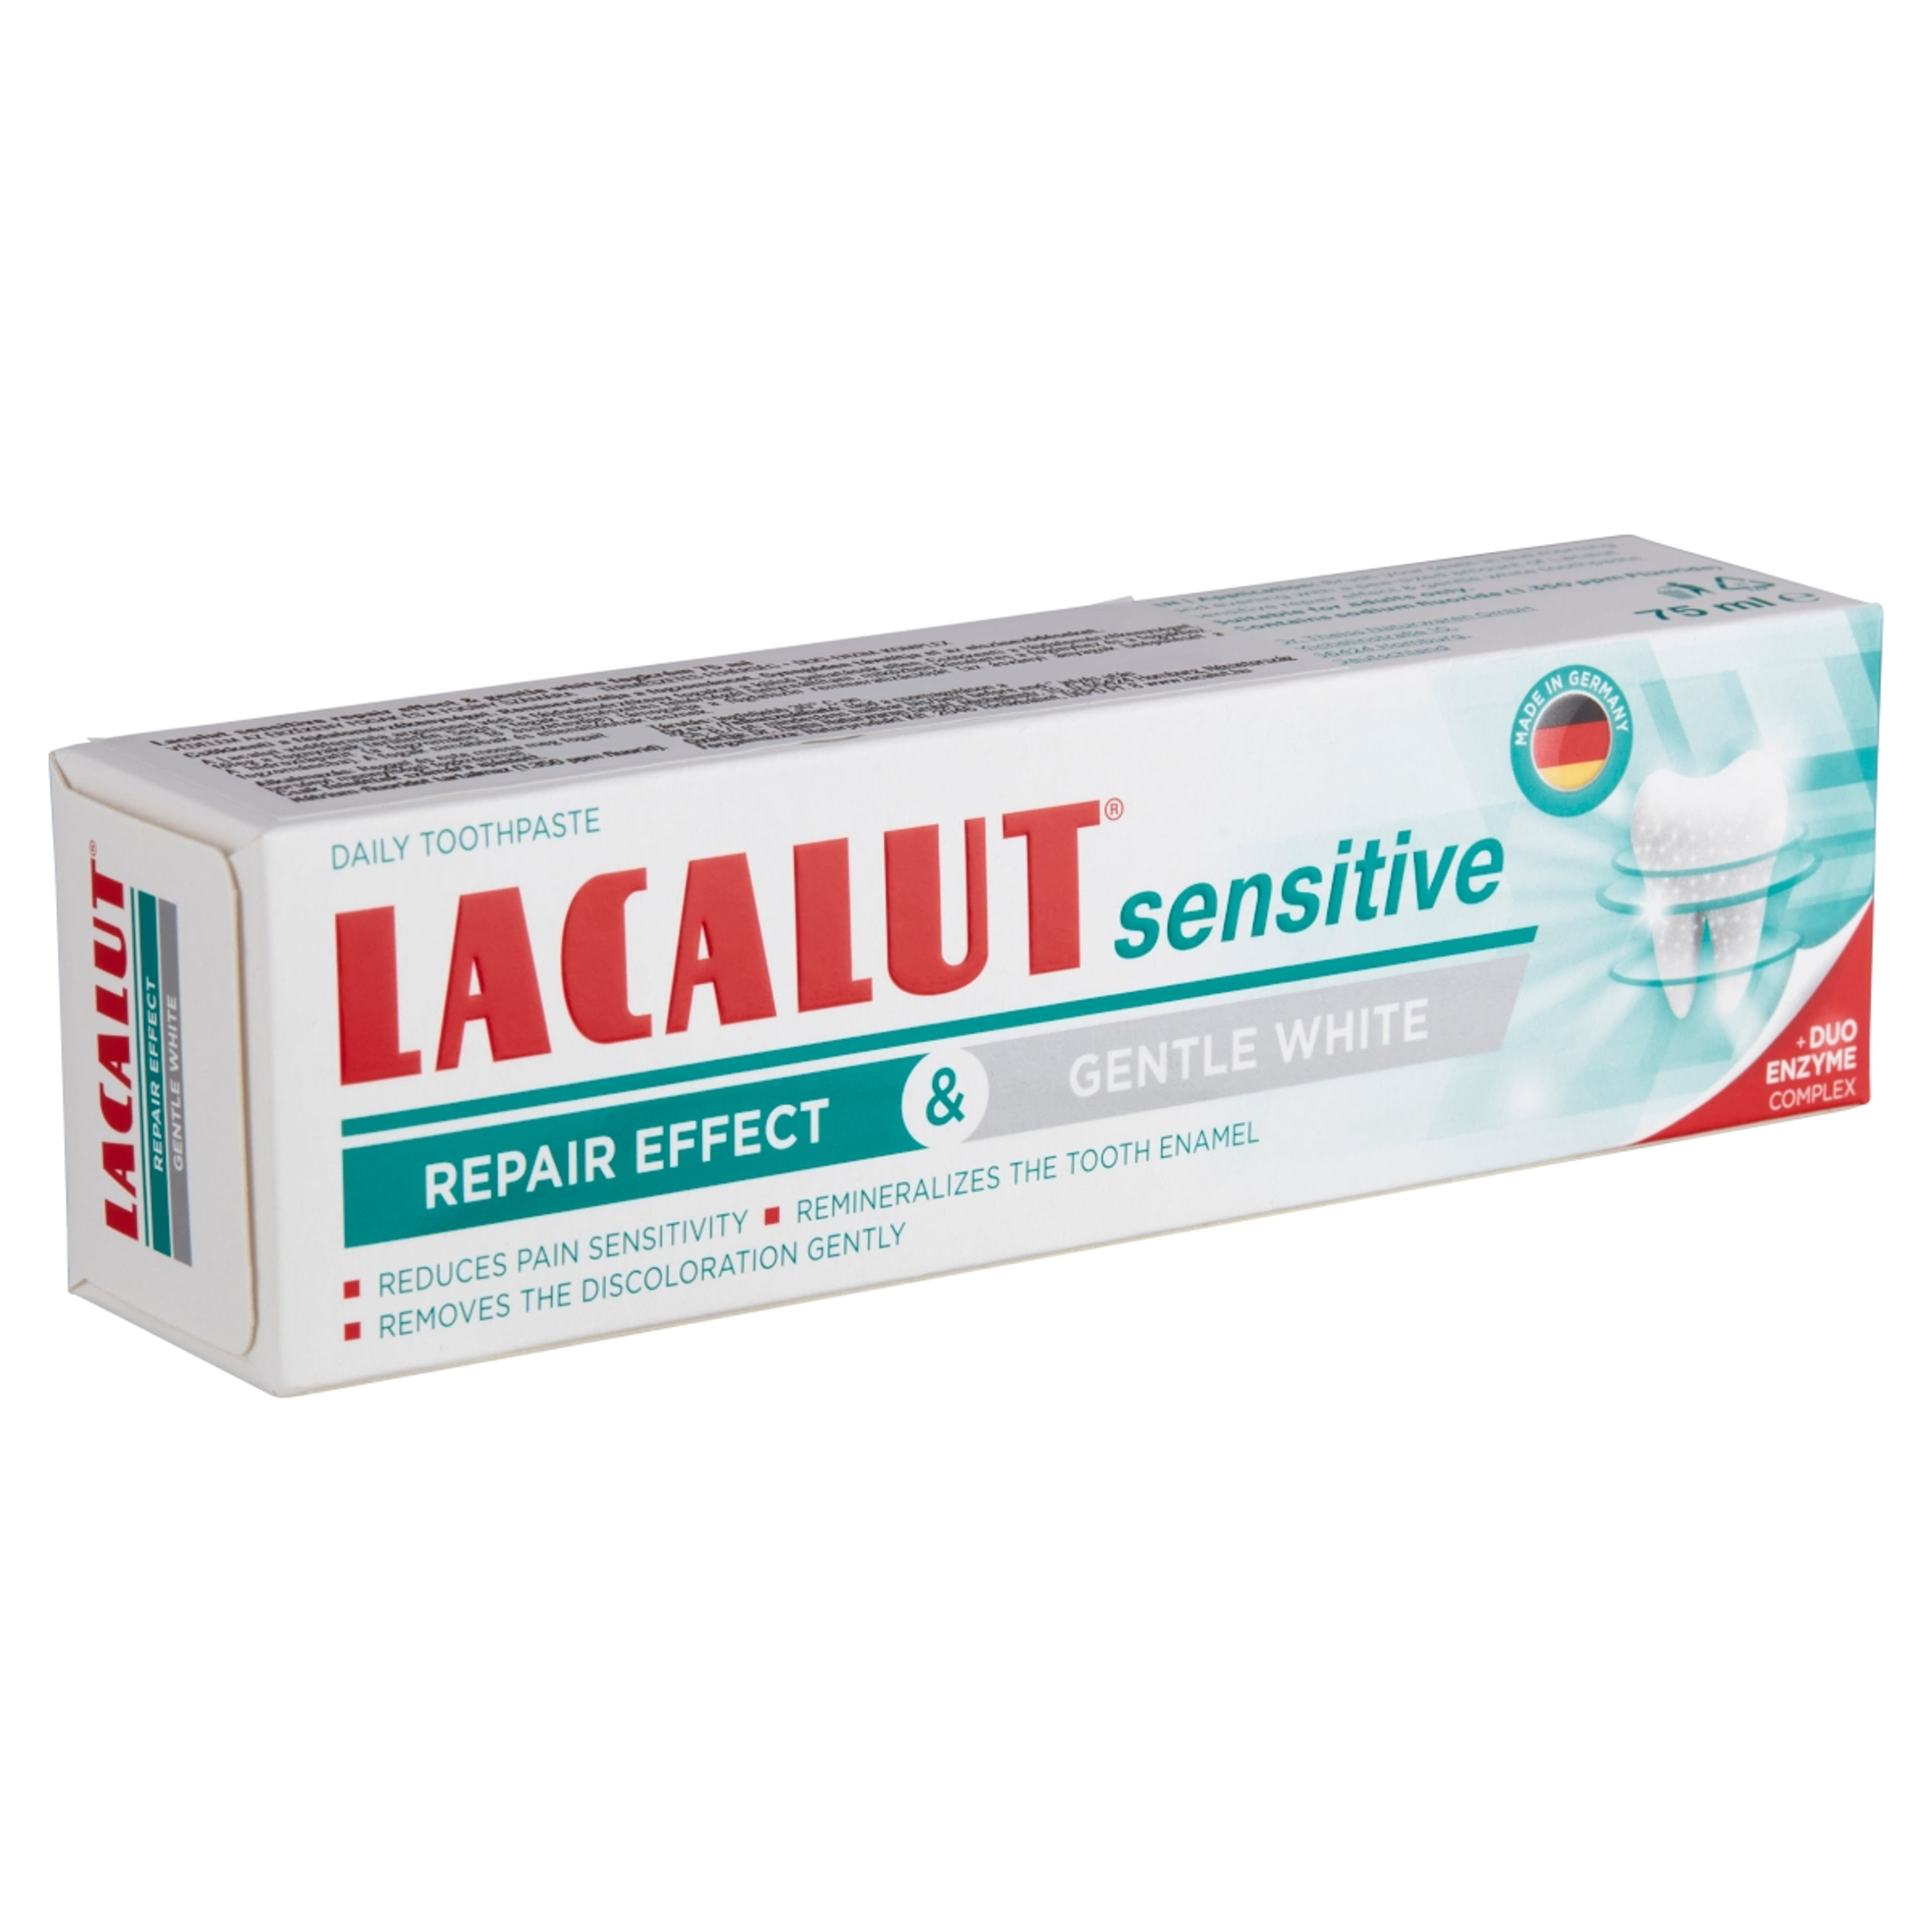 Lacalut Sensitive Repair Effect & Gentle White fogkrém - 75 ml-4